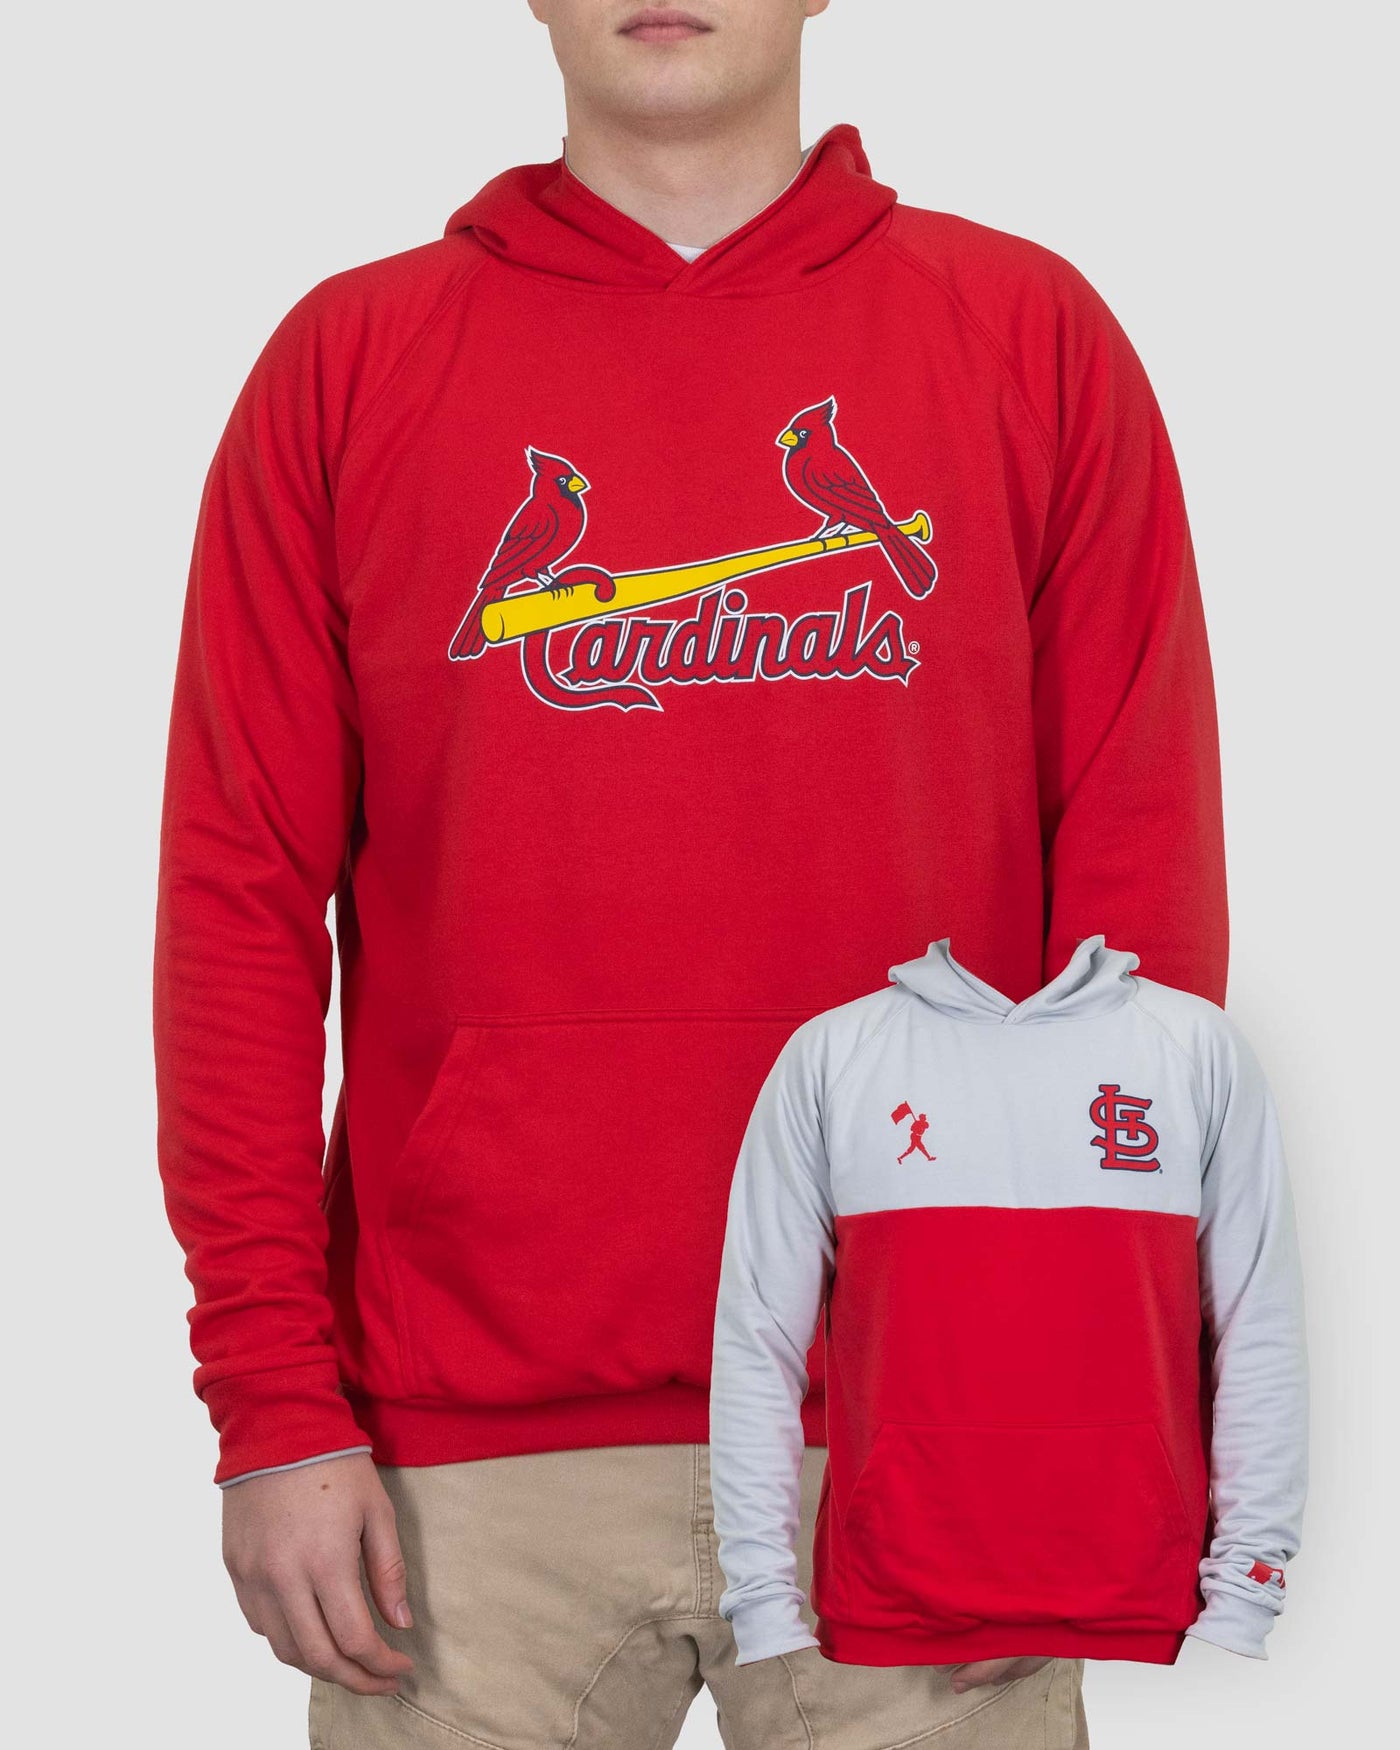 st louis cardinals baseball hoodies for men